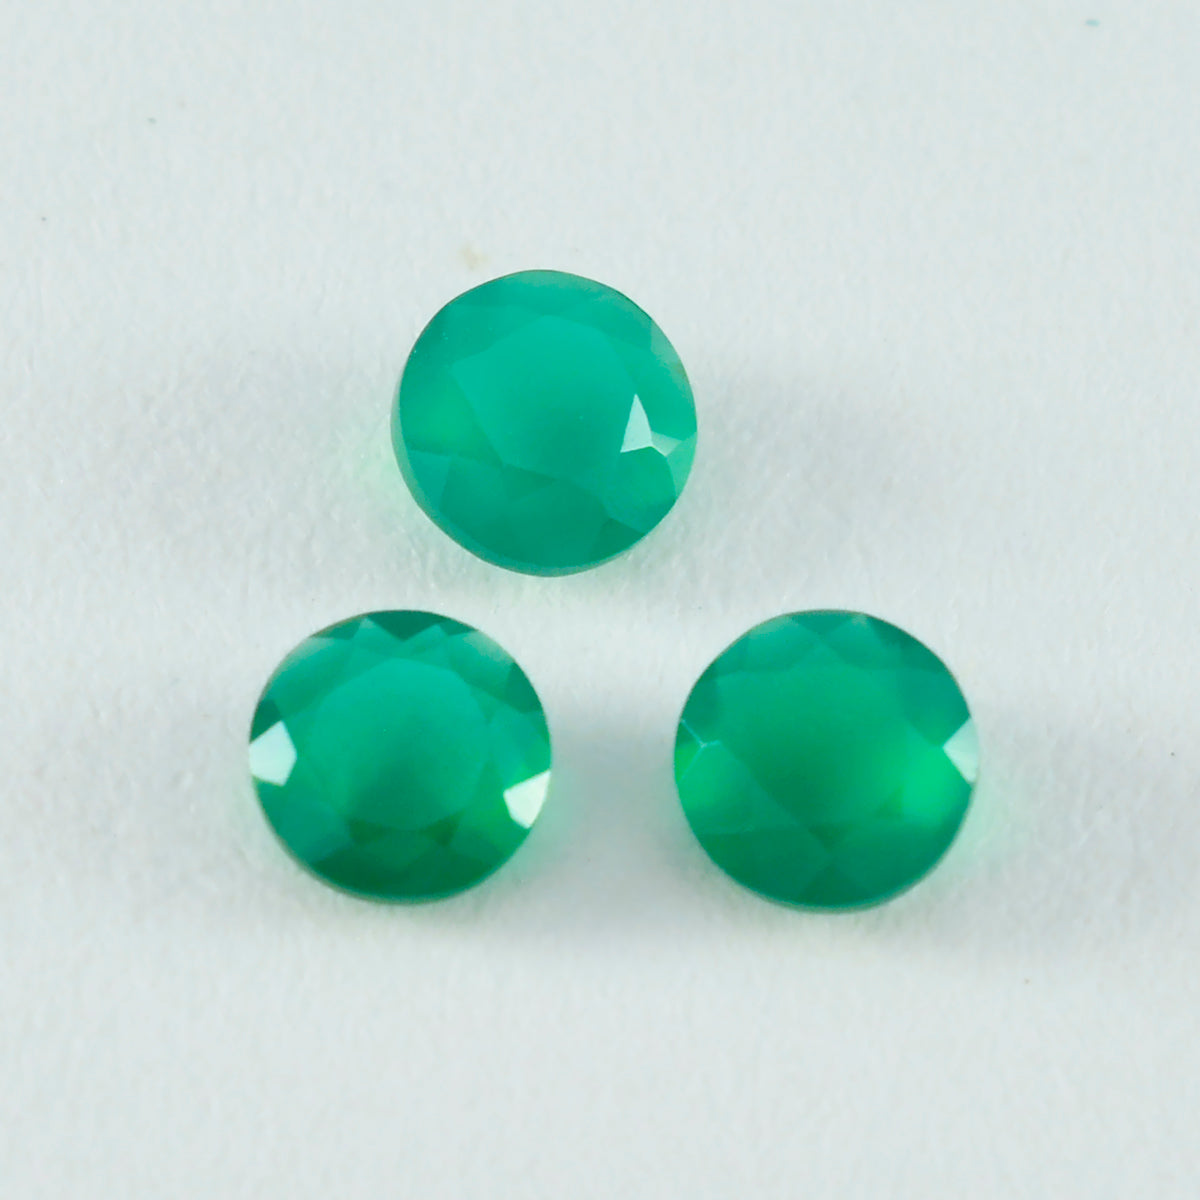 Riyogems 1 pieza jaspe verde Natural facetado 7x7mm forma redonda gemas sueltas de buena calidad